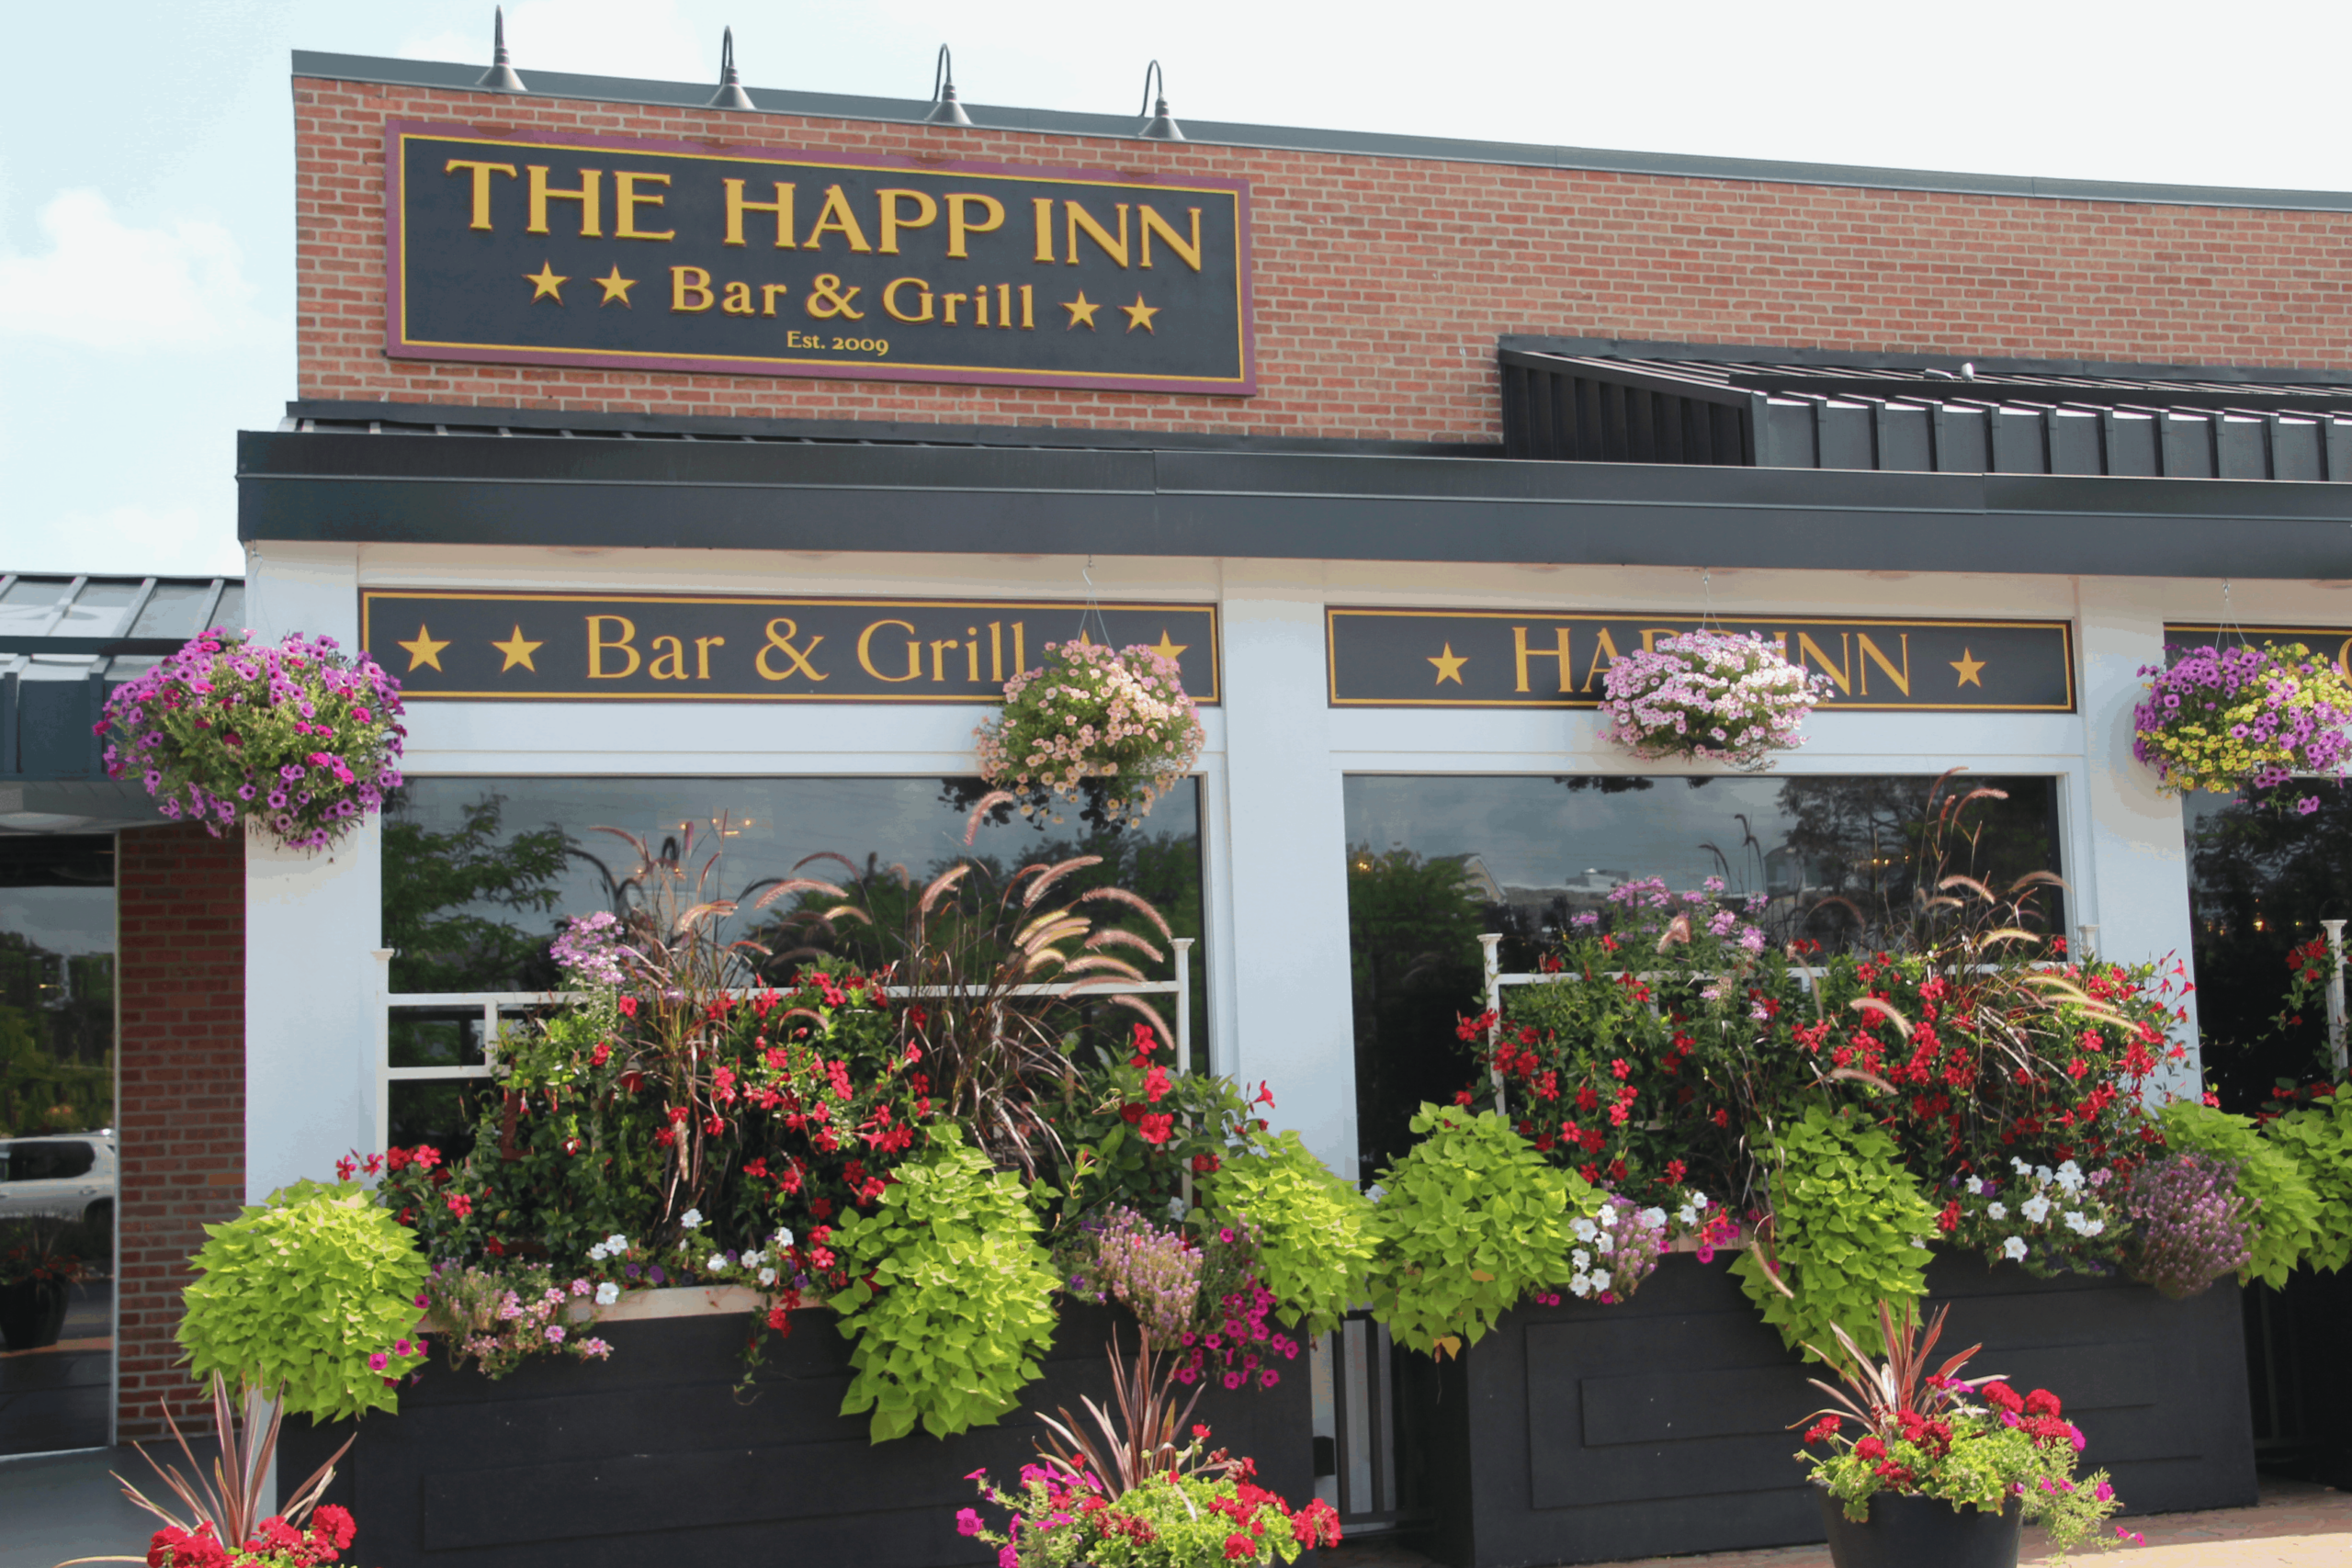 The Happ Inn Restaurant